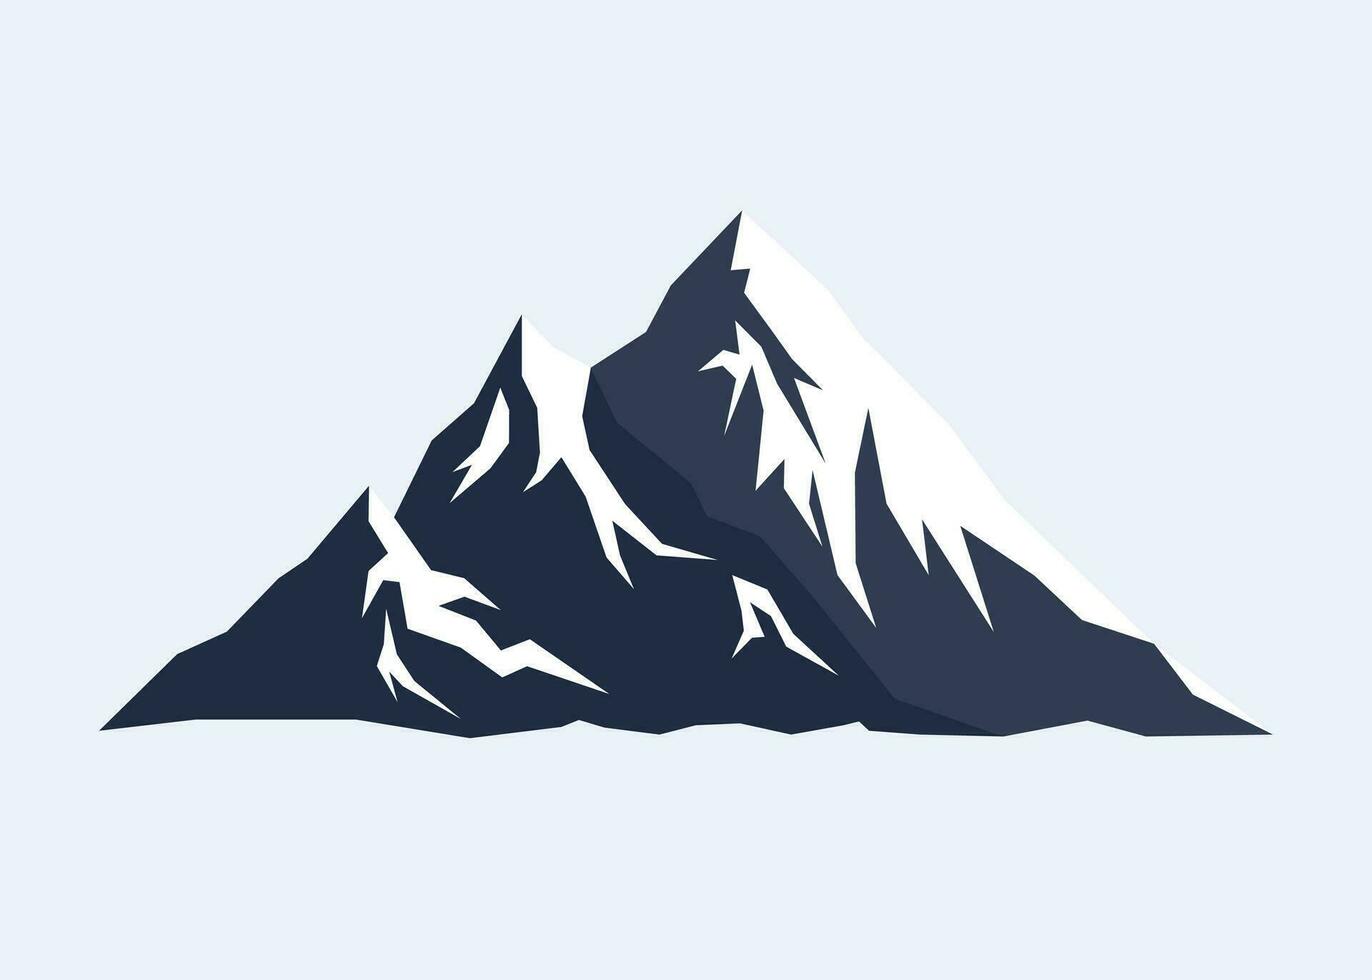 zwei Schicht Schnee Berg im dunkel Blau Farbe Landschaft vektor